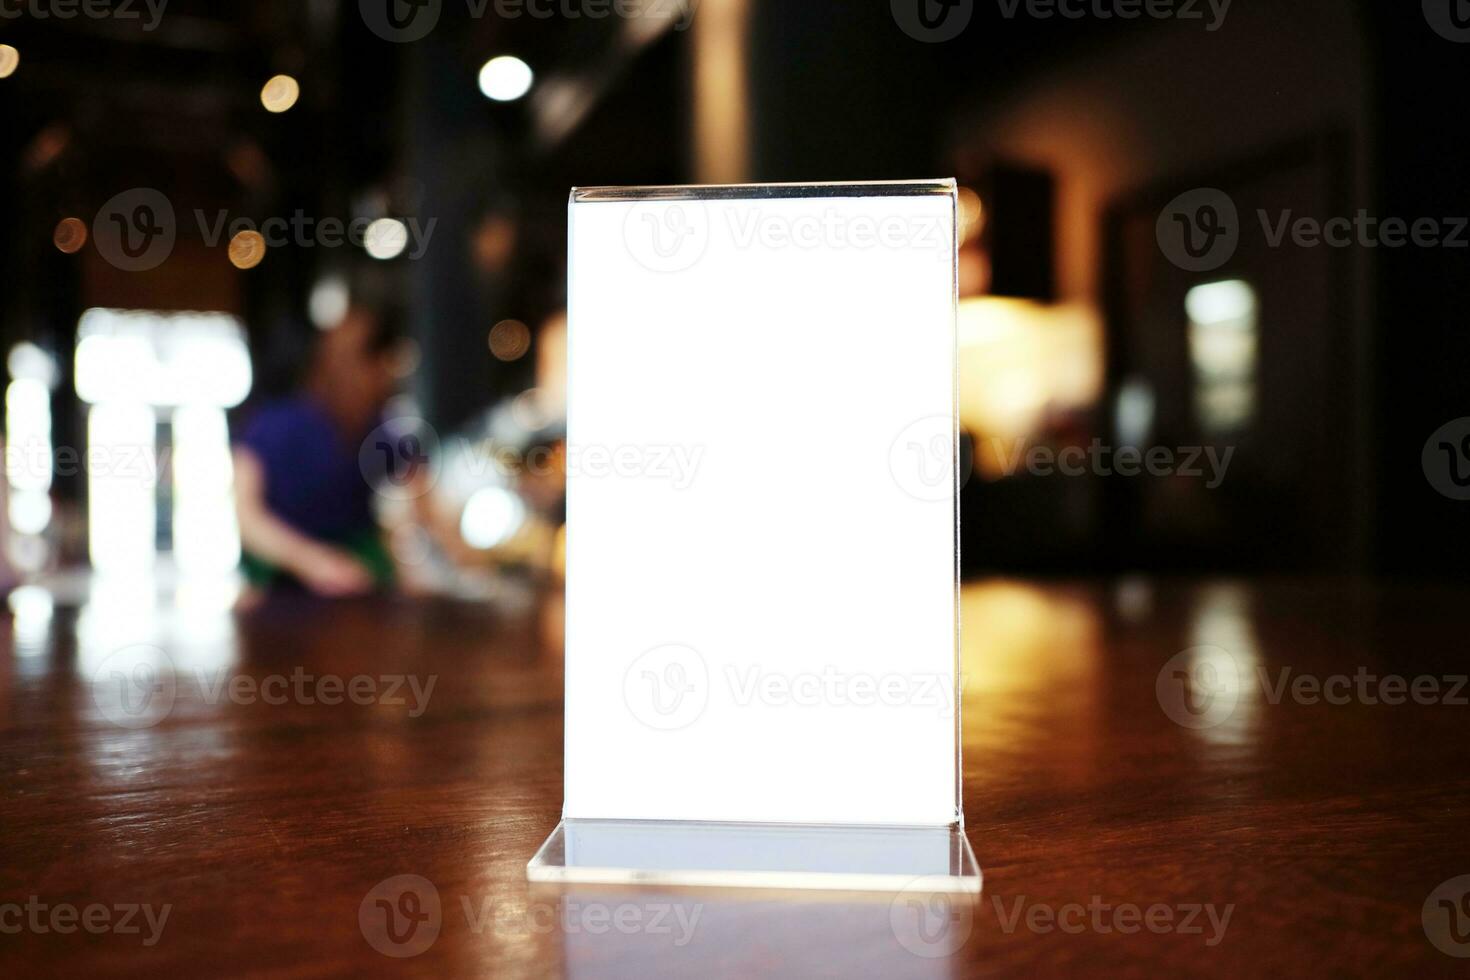 menú marco en pie en madera mesa en bar restaurante cafetería. espacio para texto márketing promoción. foto